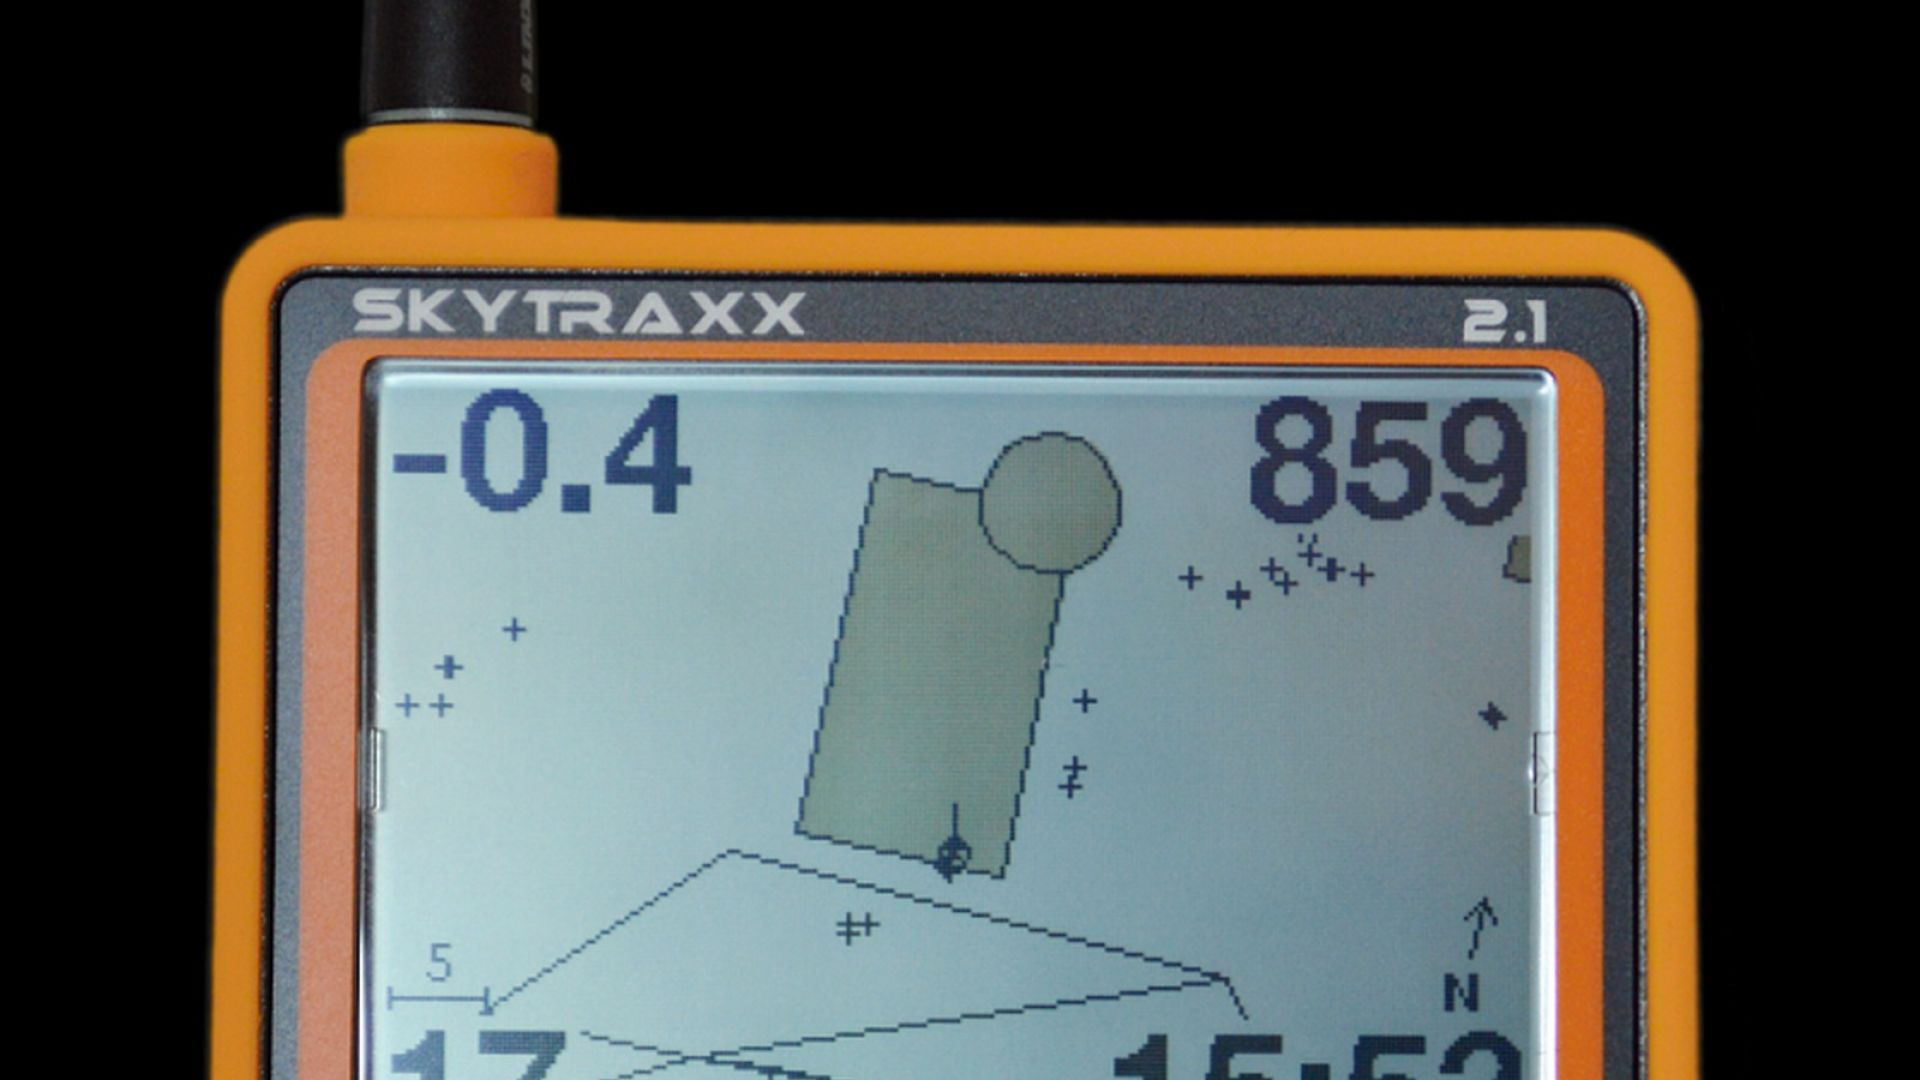 Skytraxx 2.1